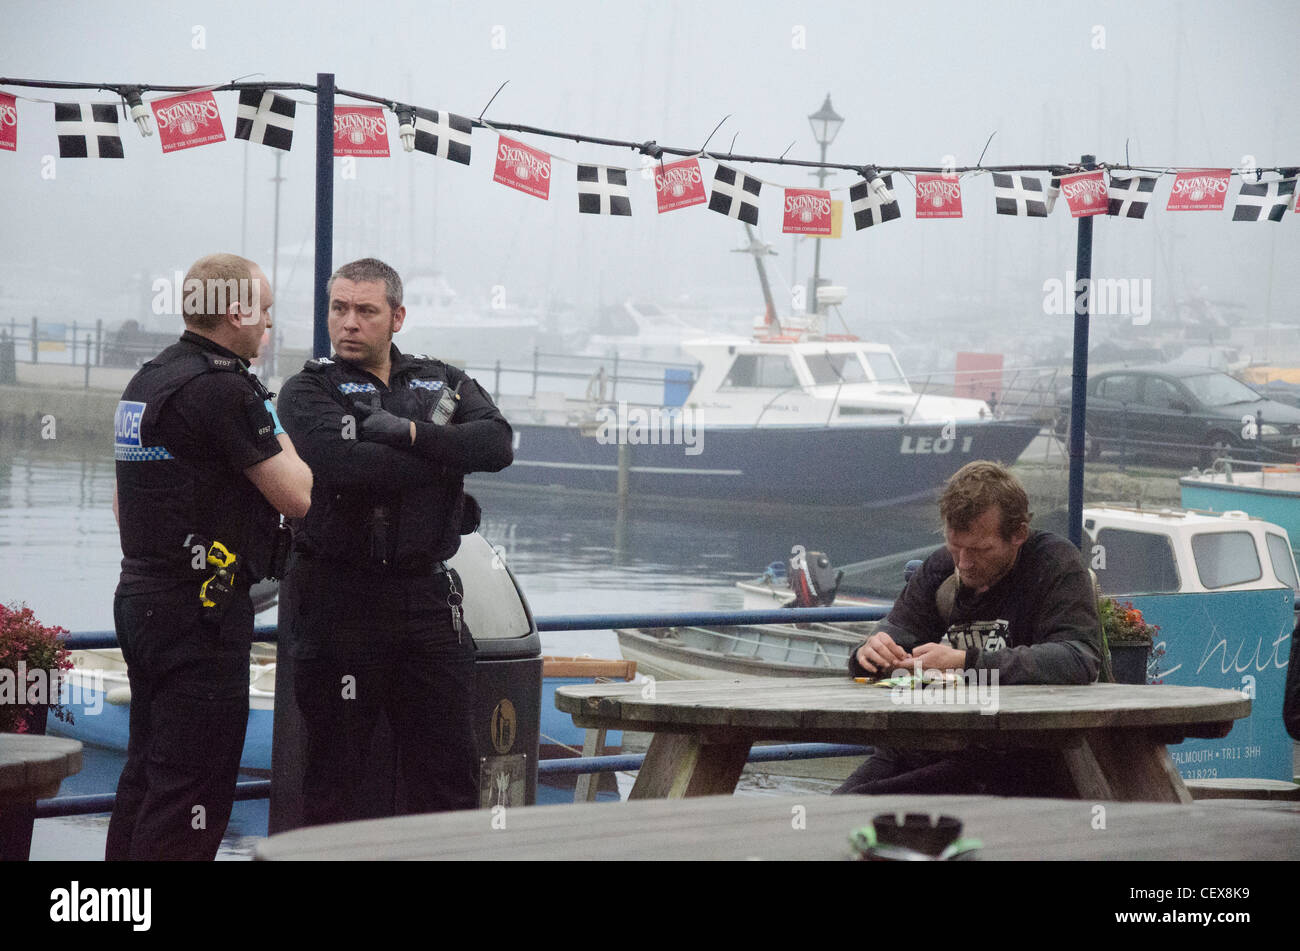 Polizei Wache nach für eine Störung im Chainlocker Pub in Falmouth, Cornwall aufgerufen wird Stockfoto